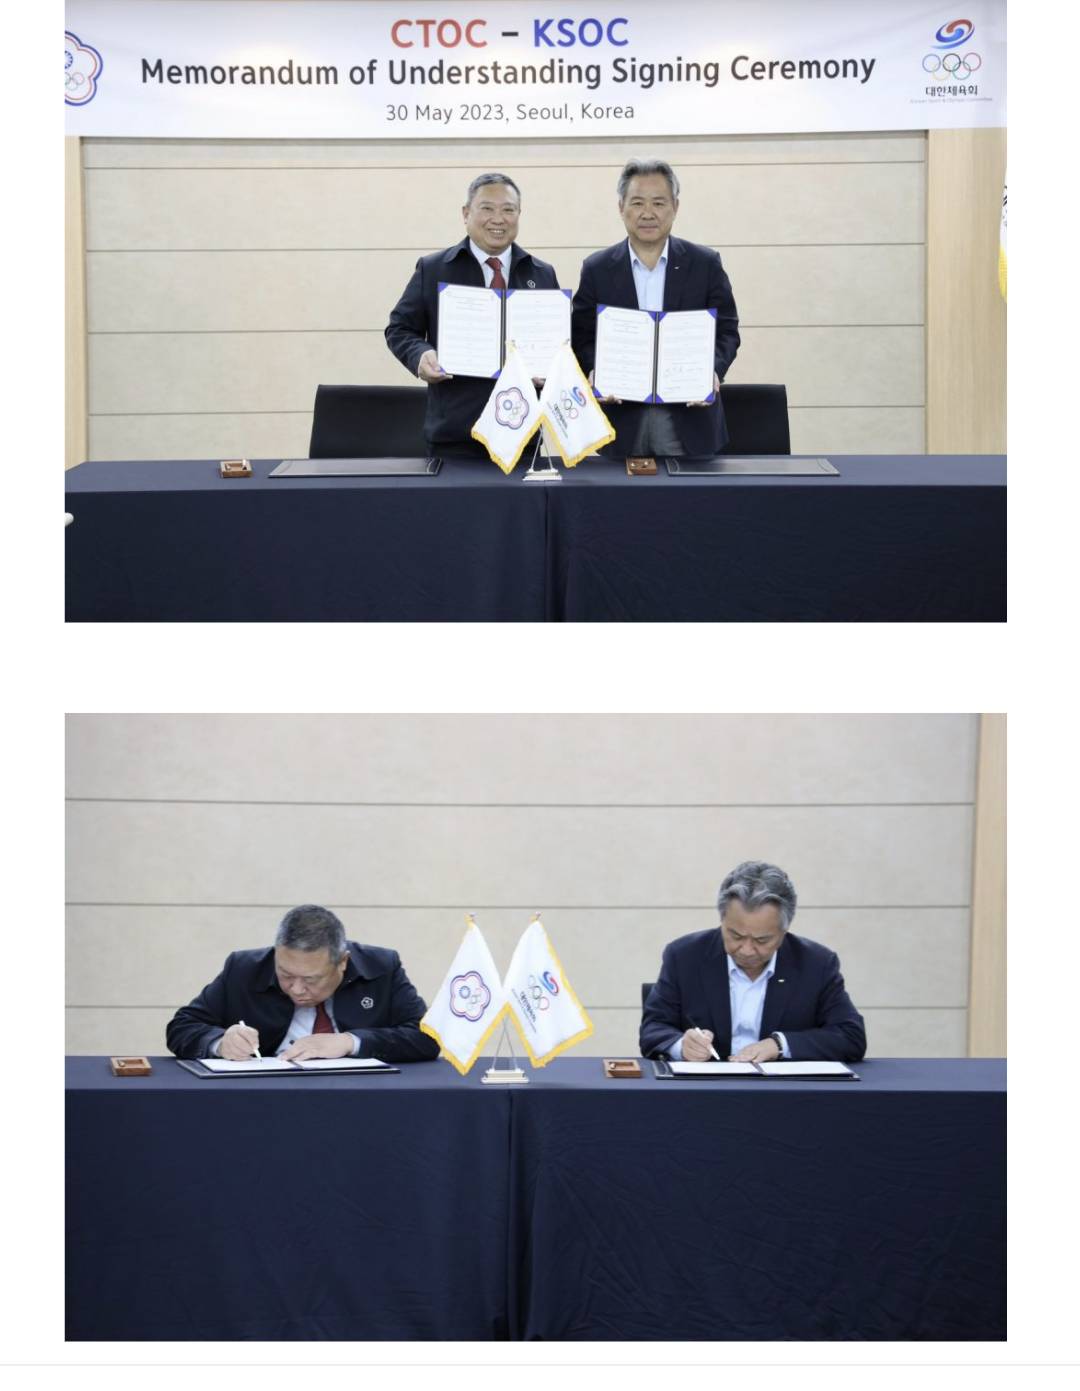 中華奧會與韓國奧會簽署雙邊合作交流備忘錄